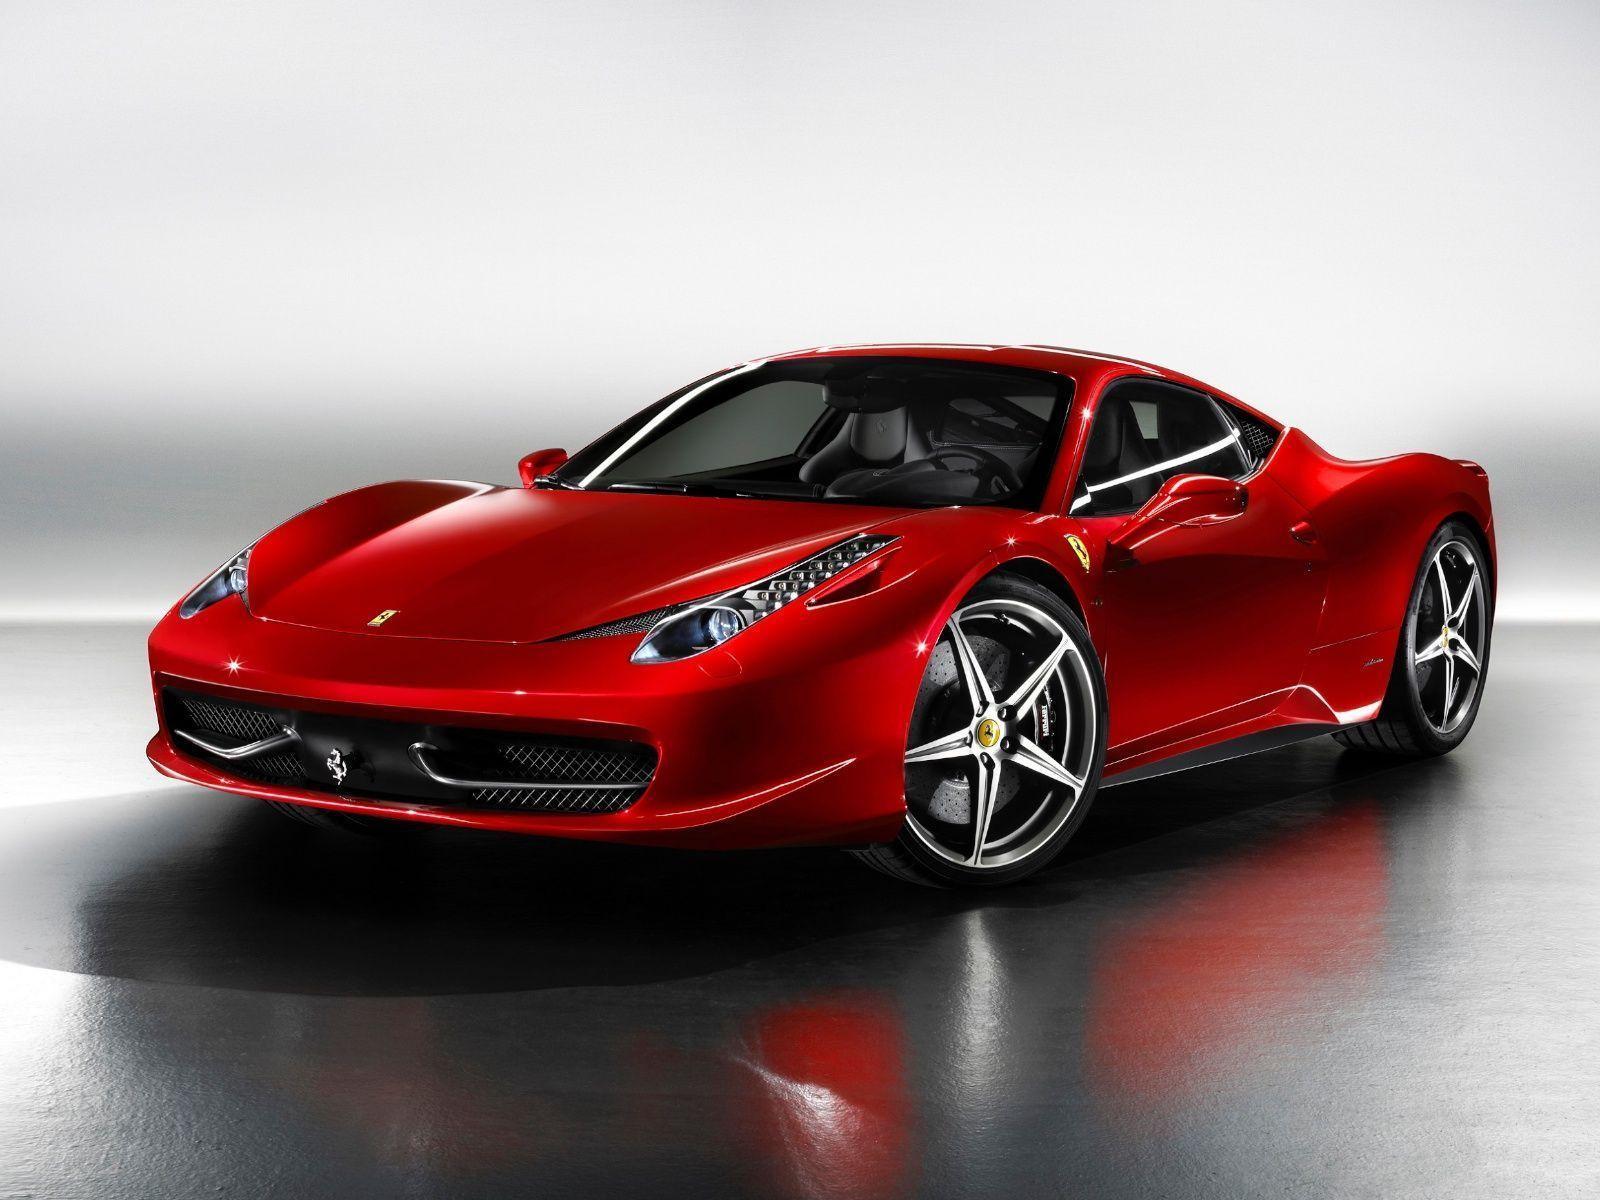 1600 x 1200 · jpeg - 2015 Ferrari 458 Italia Wallpapers - Wallpaper Cave